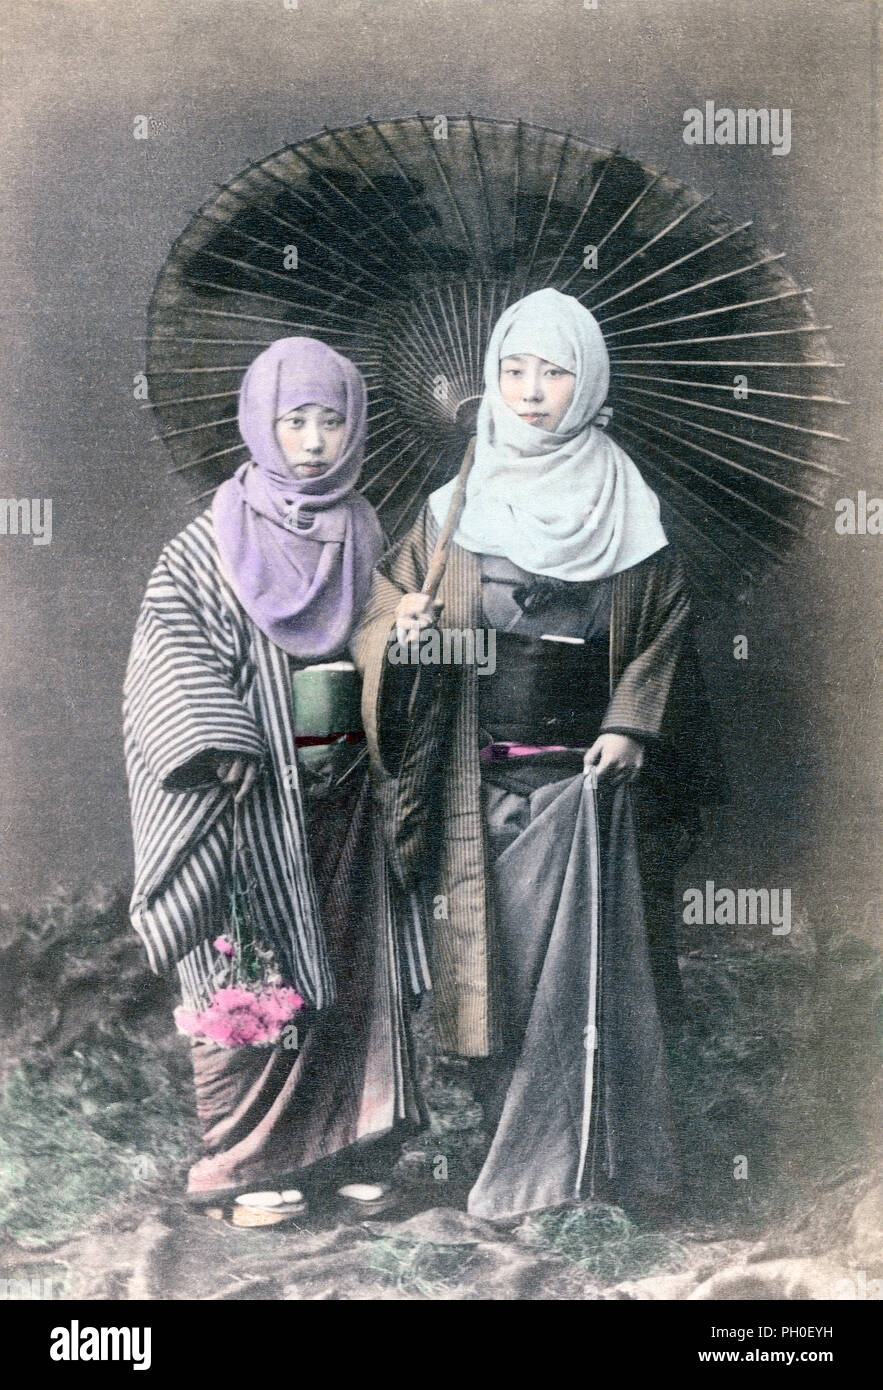 [1890s Japan - Frauen im Winter Kleidung] - In diesem Studio Foto, zwei Frauen in dicken Winter kimono haben okosozukin rund um den Kopf gewickelt, um sich gegen die Kälte zu schützen. Eins der Mädchen trägt ein Sonnenschirm, der andere ein paar Blumen. 19 Vintage albumen Foto. Stockfoto